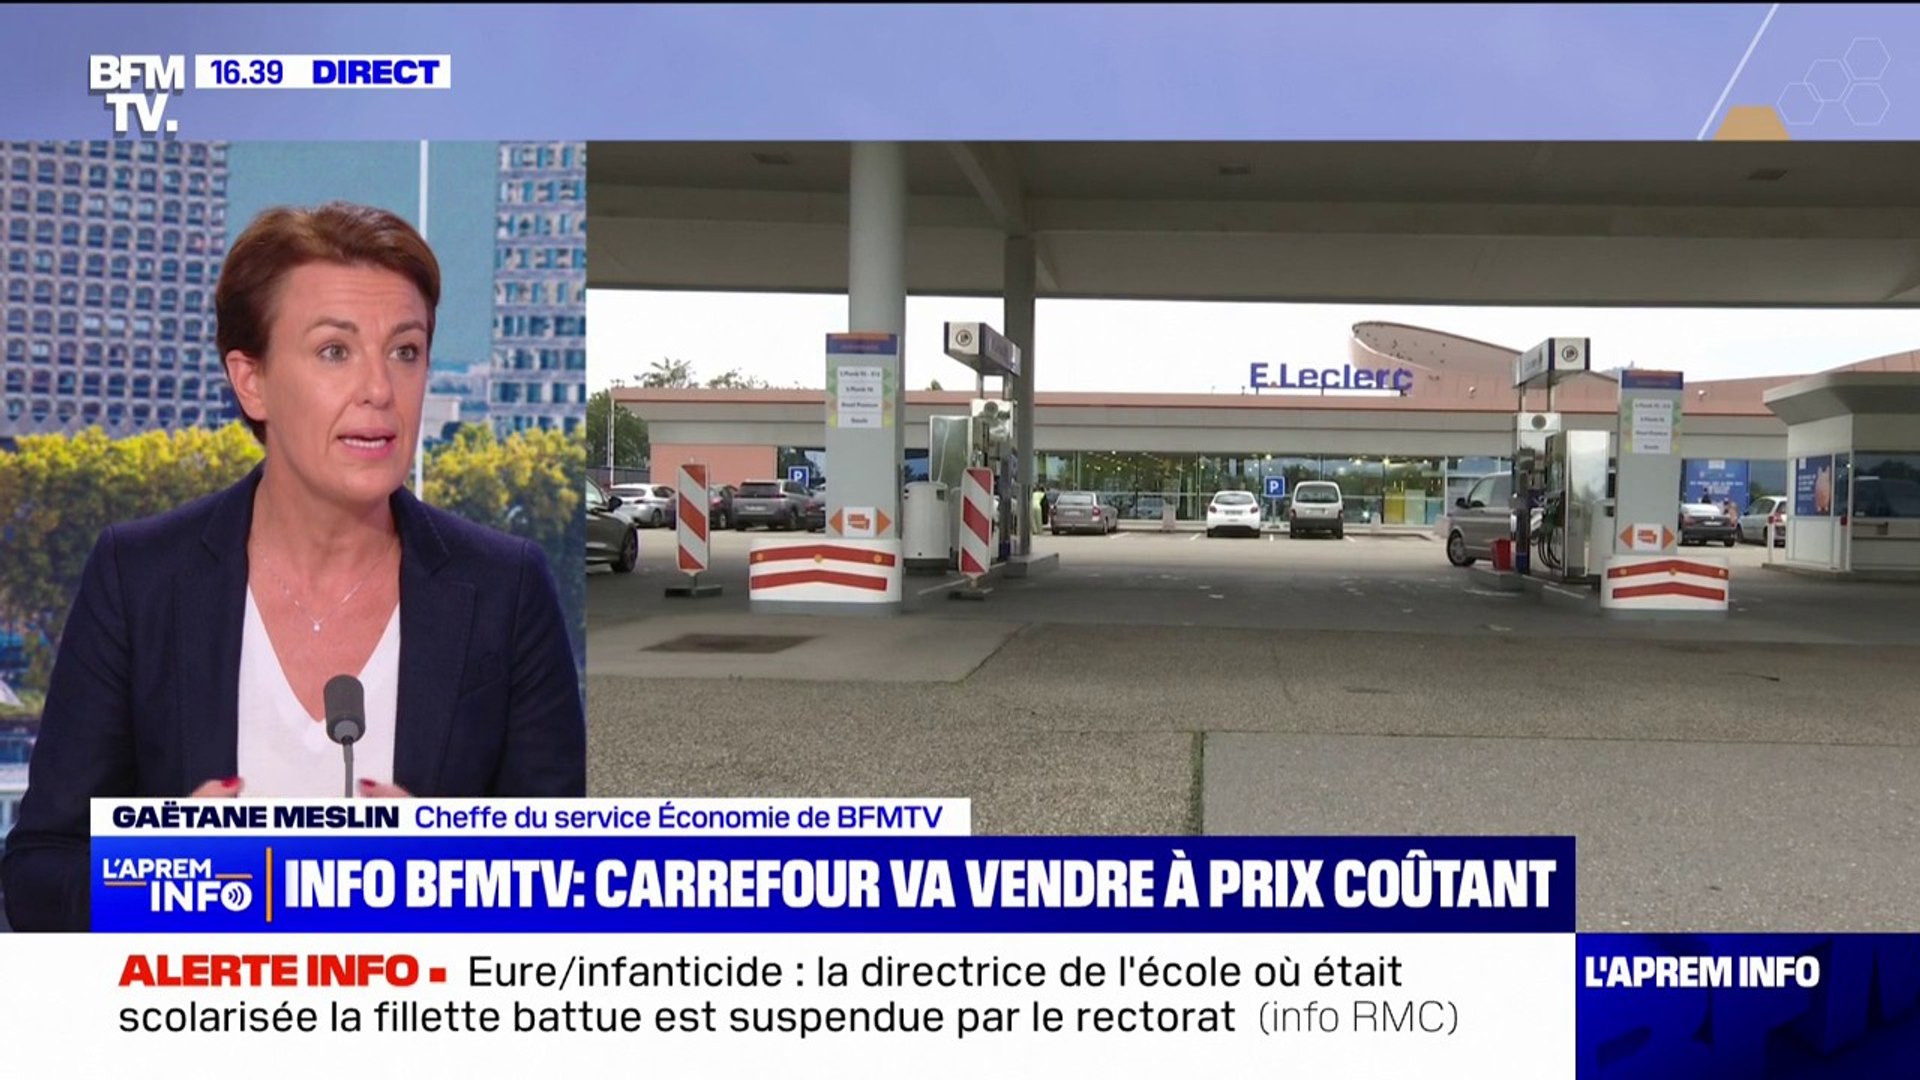 Carburant: Carrefour s'engage à vendre à prix coûtant dès vendredi et ce  jusqu'à la fin de l'année (info BFMTV) - Vidéo Dailymotion